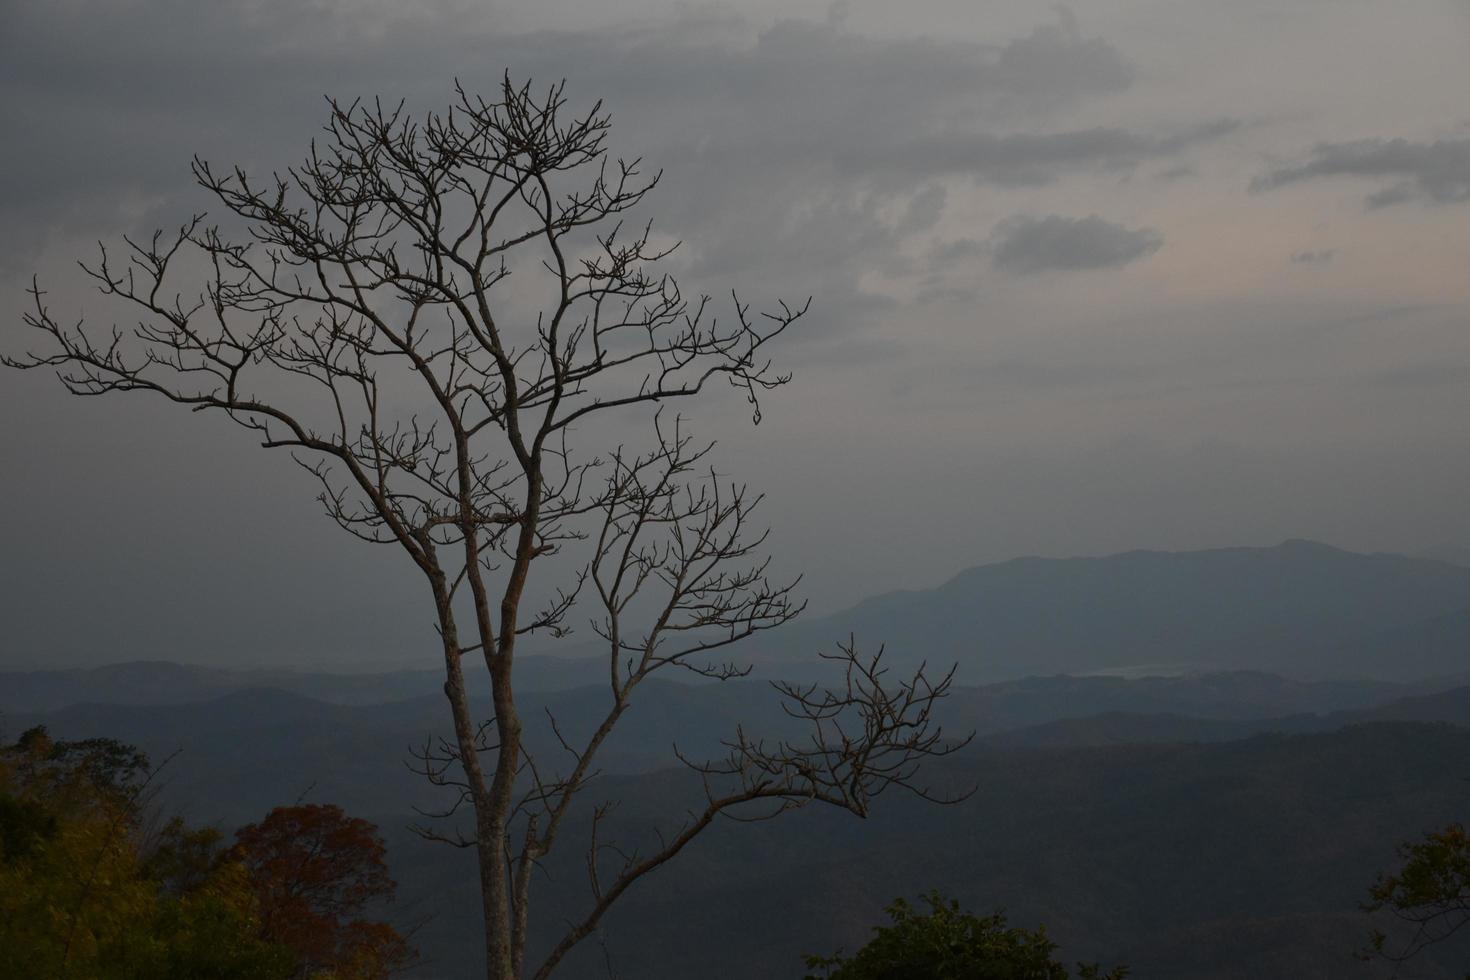 torra träd mot en bergsbakgrund på morgonen på dagen. foto